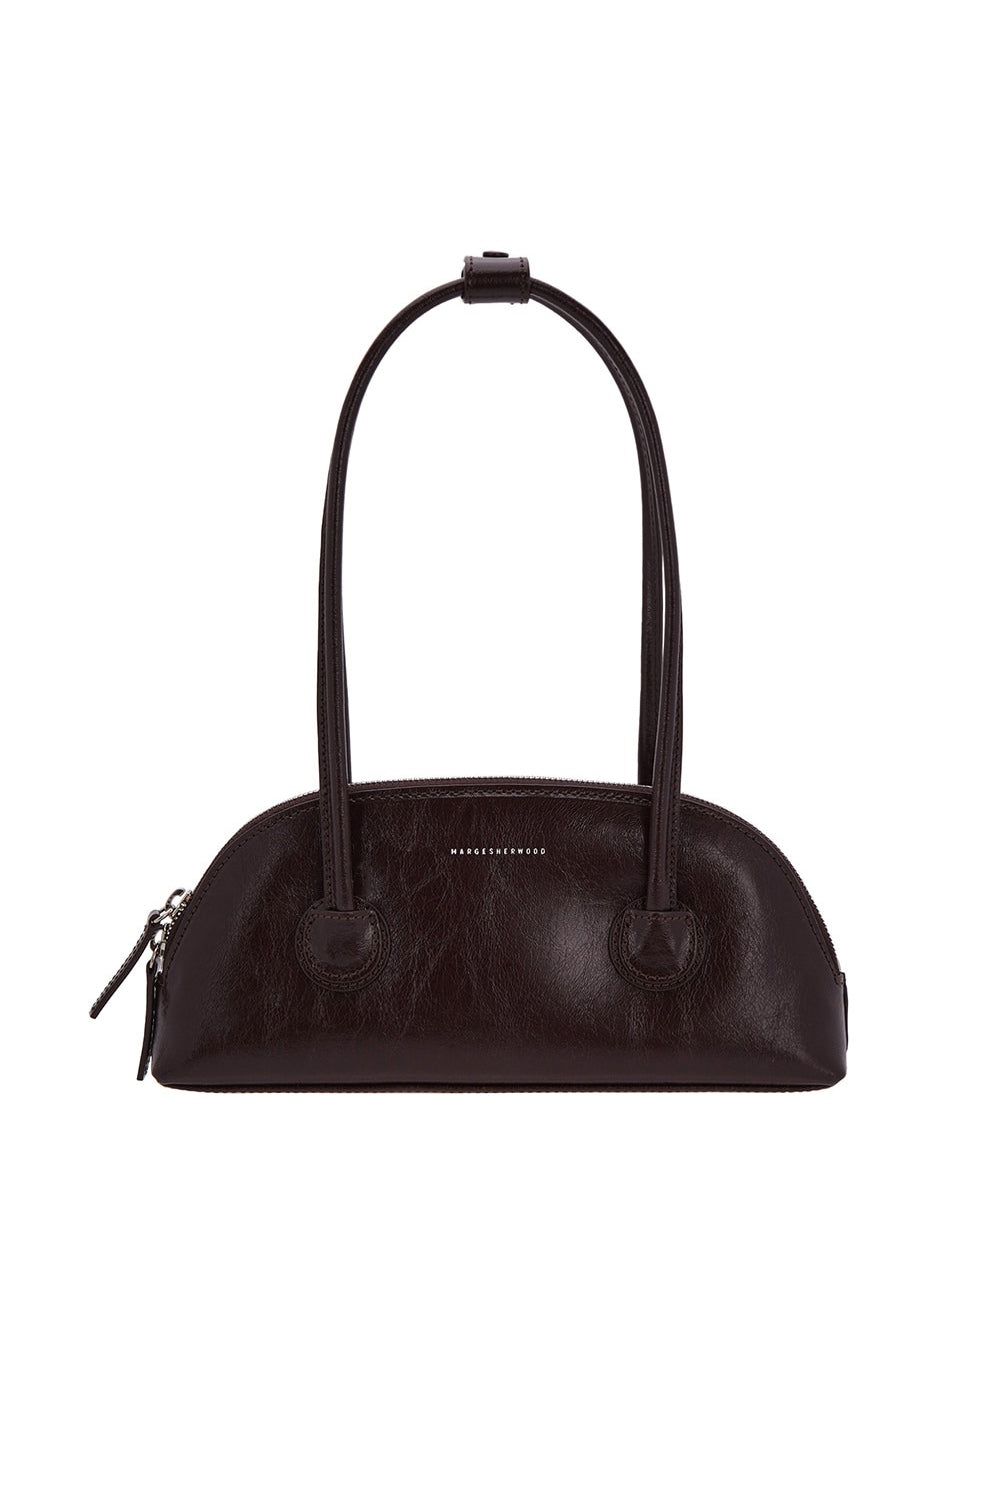 Marge Sherwood Bessette Leather Shoulder Bag in Black